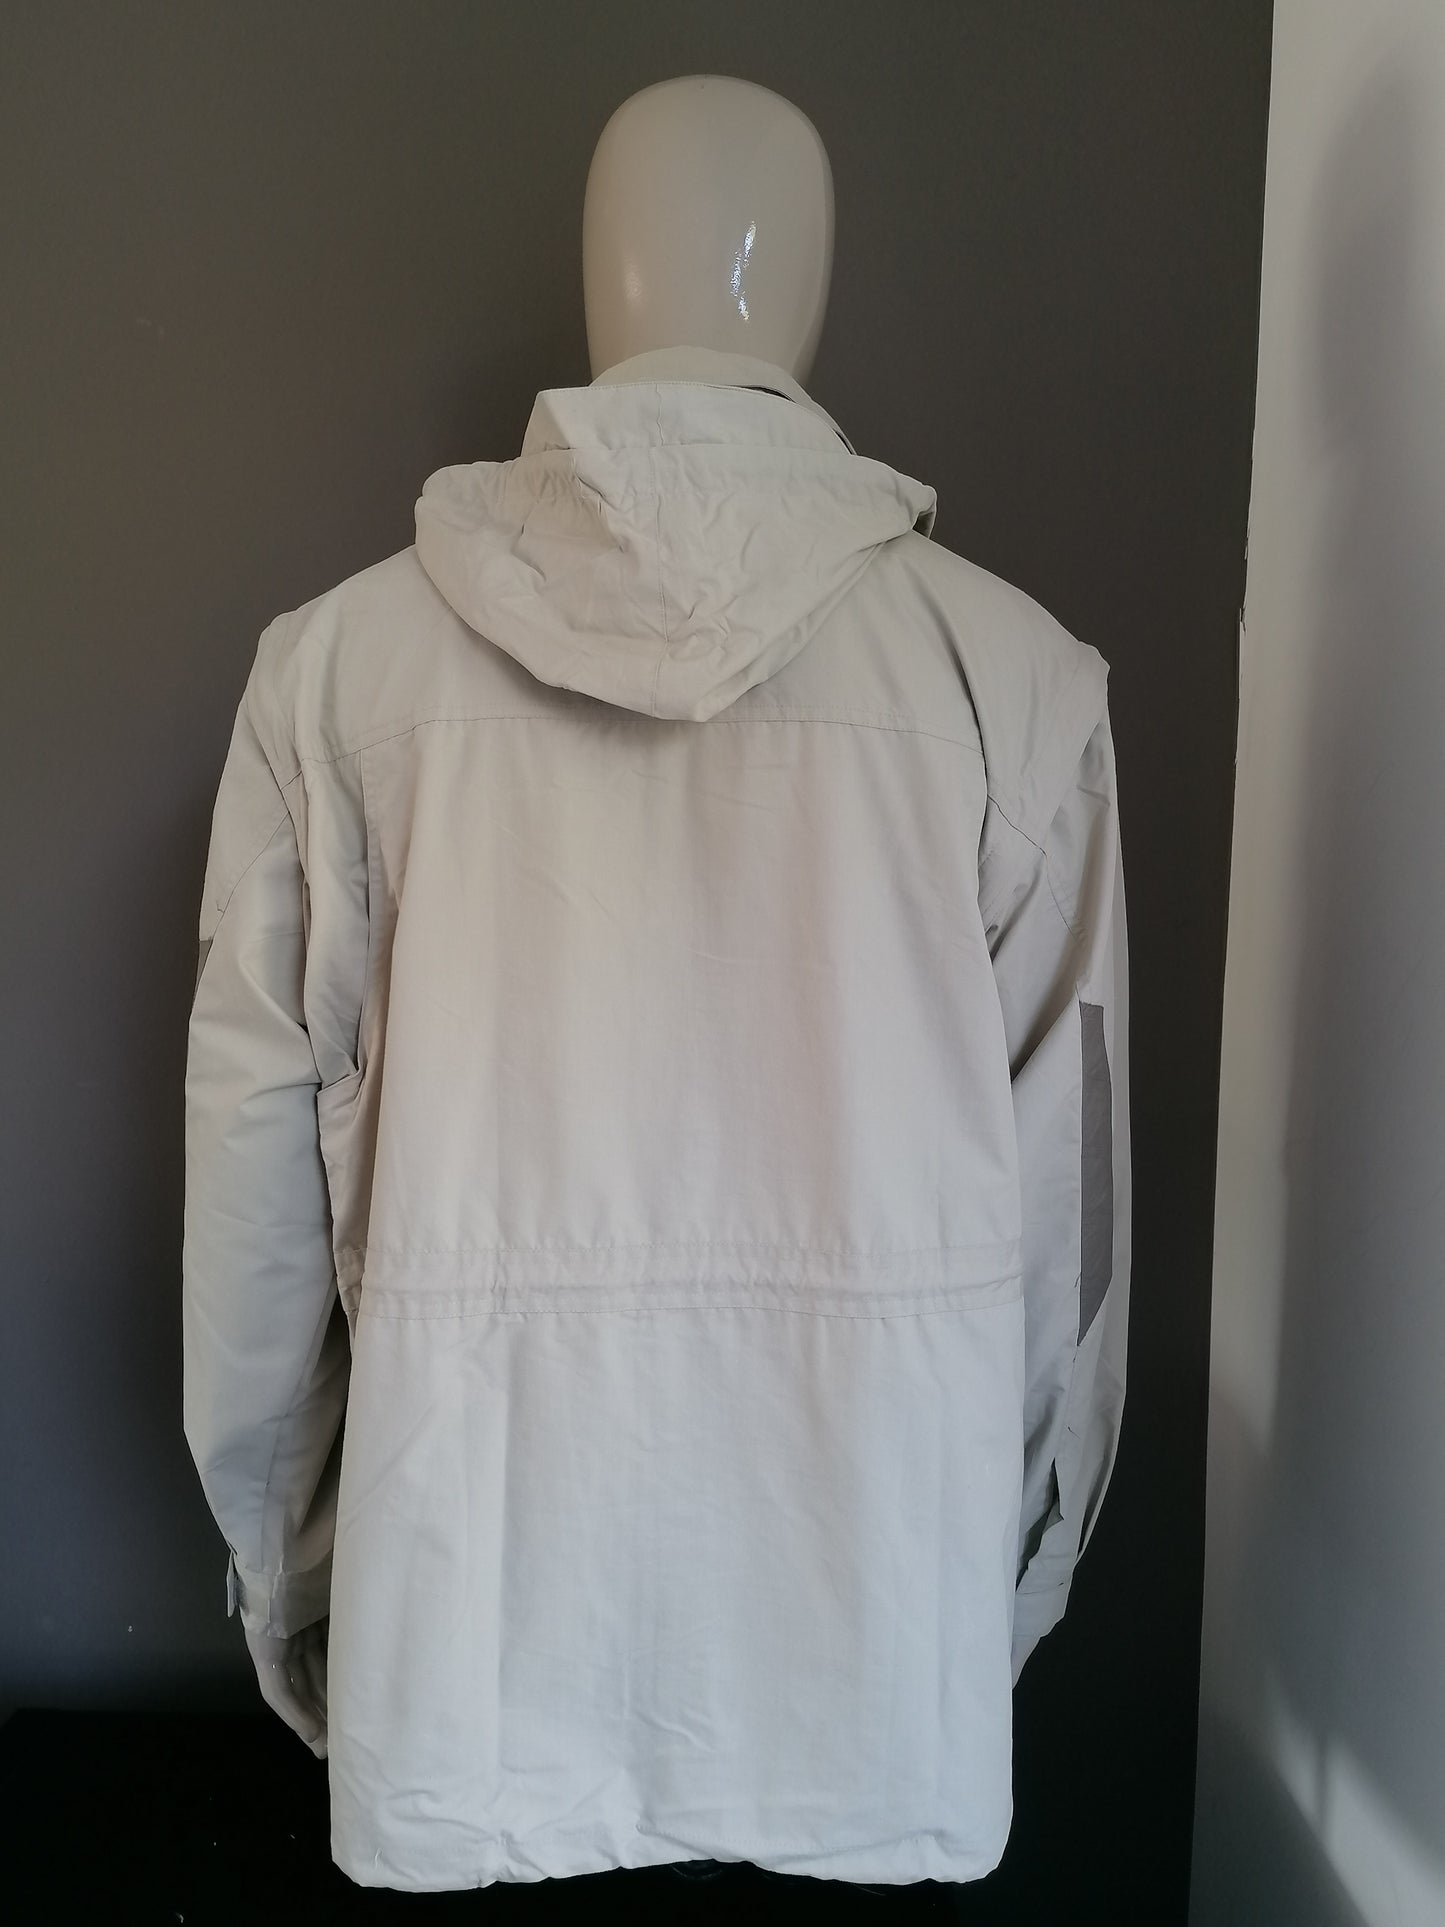 TCM Outdoor Zomer jas / Bodywarmer. Beige gekleurd. Maat L / XL. Nieuw!